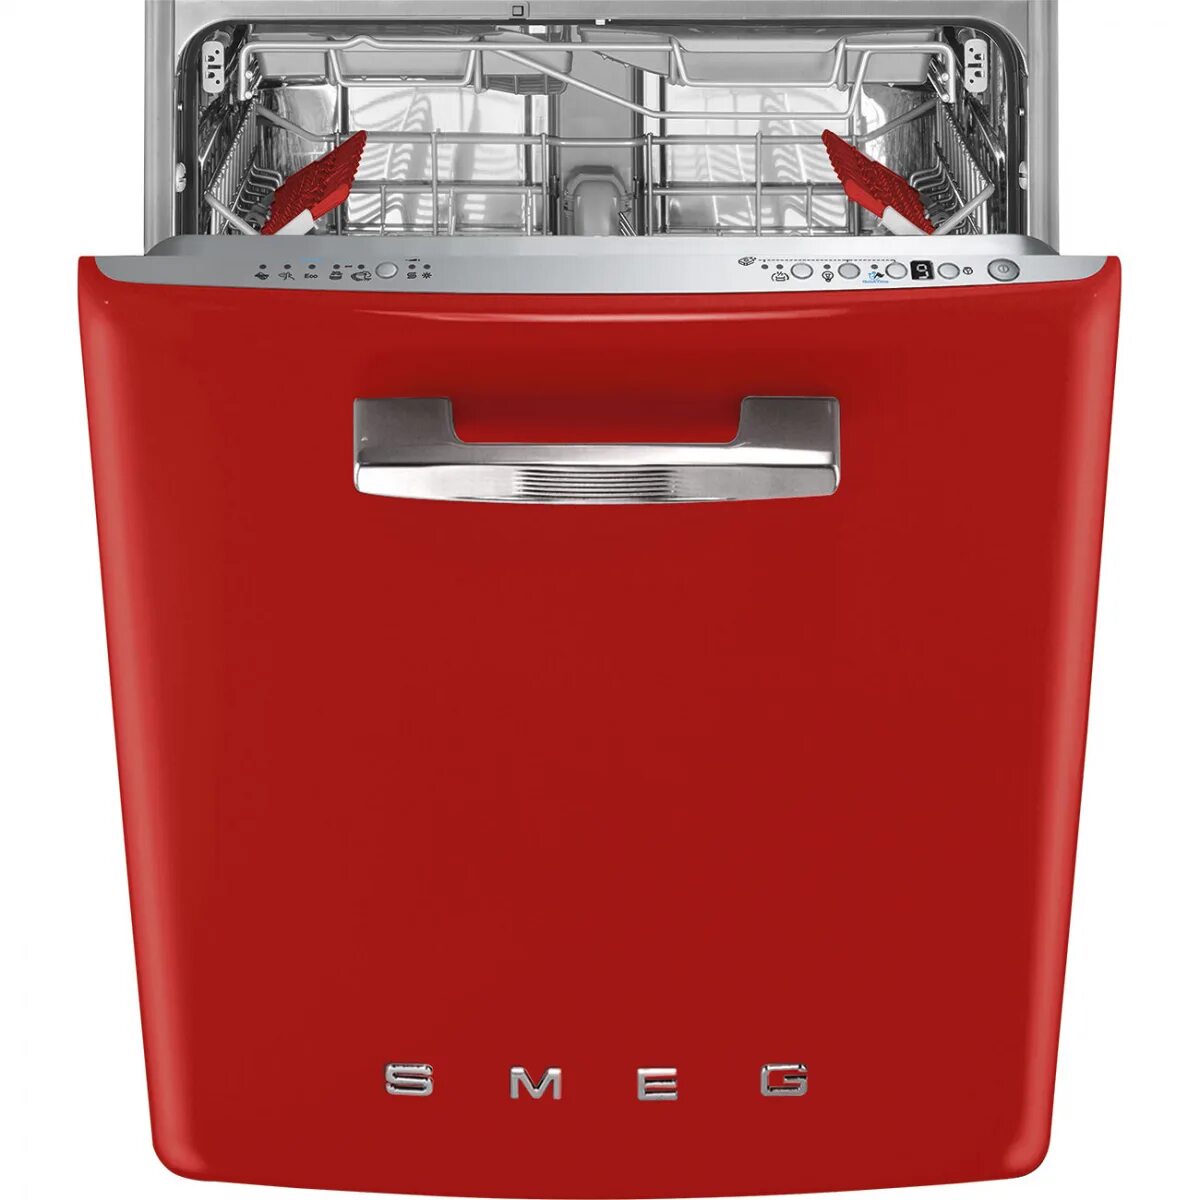 Российские посудомоечные машины. Посудомоечная машина Smeg st2fabr2. Посудомоечная машина Smeg st2fabcr. Смег посудомоечная машина встраиваемая. Посудомоечная машина Смег 45 см встраиваемая.